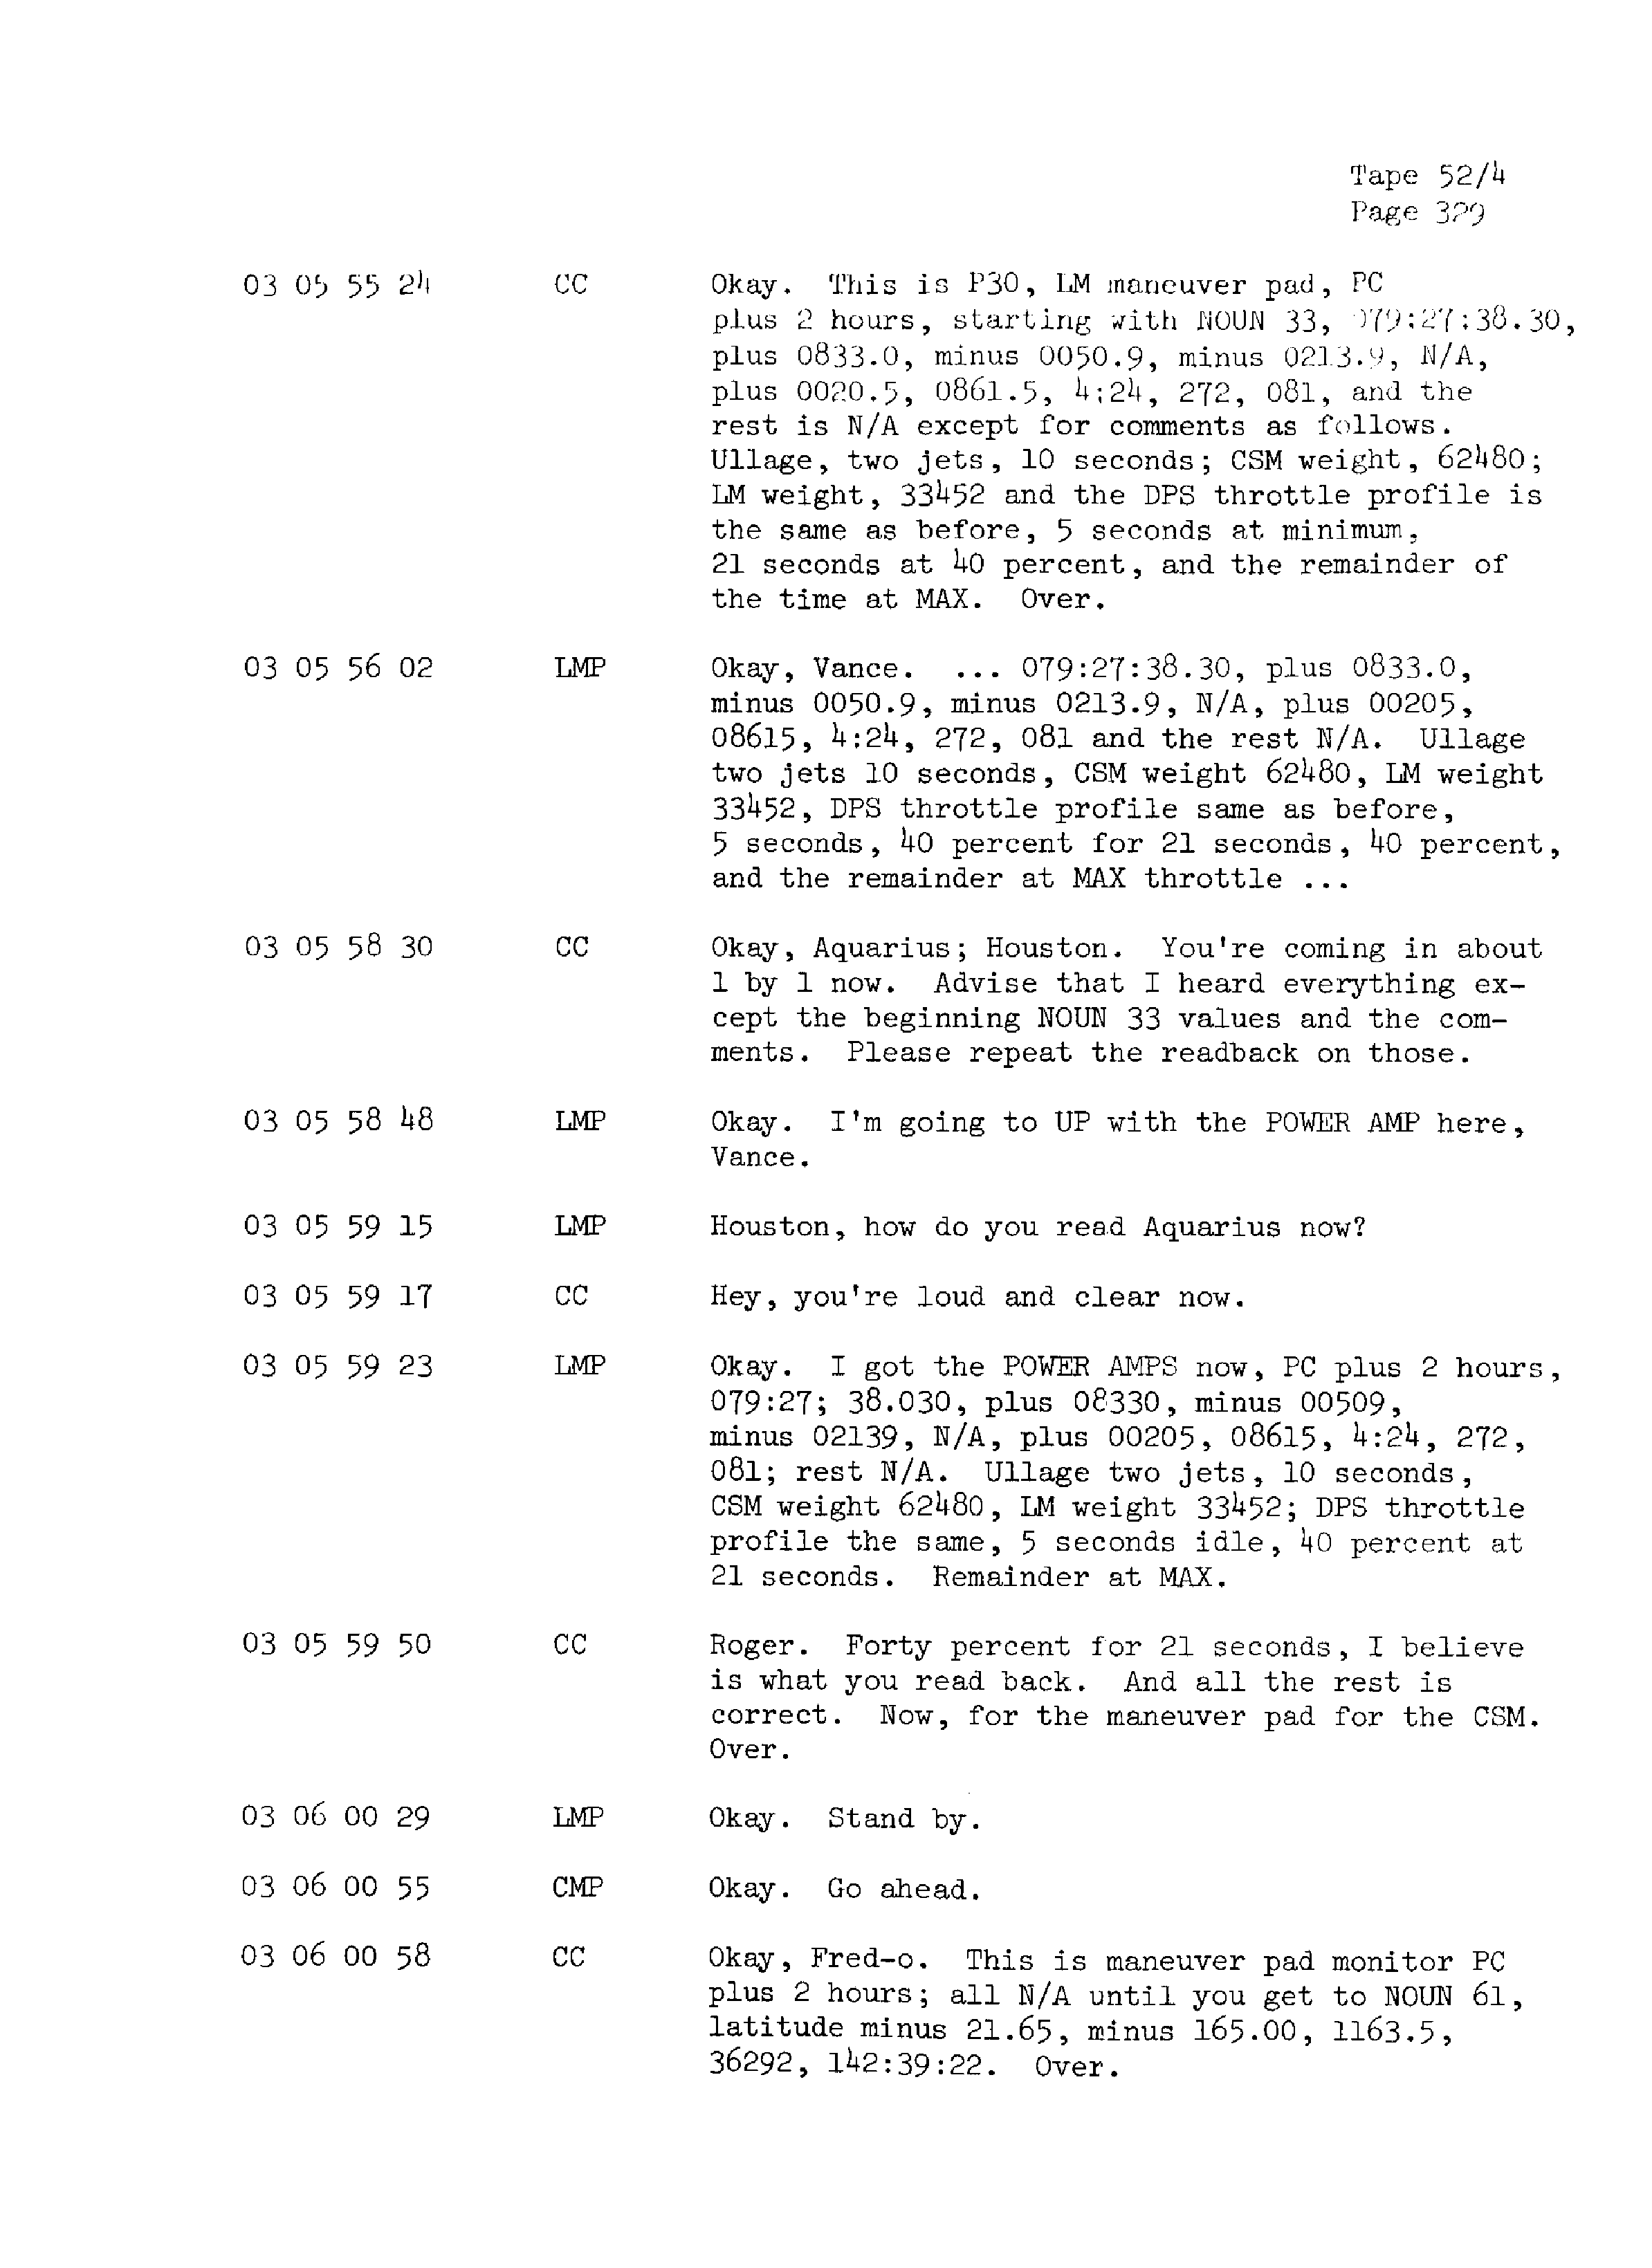 Page 336 of Apollo 13’s original transcript